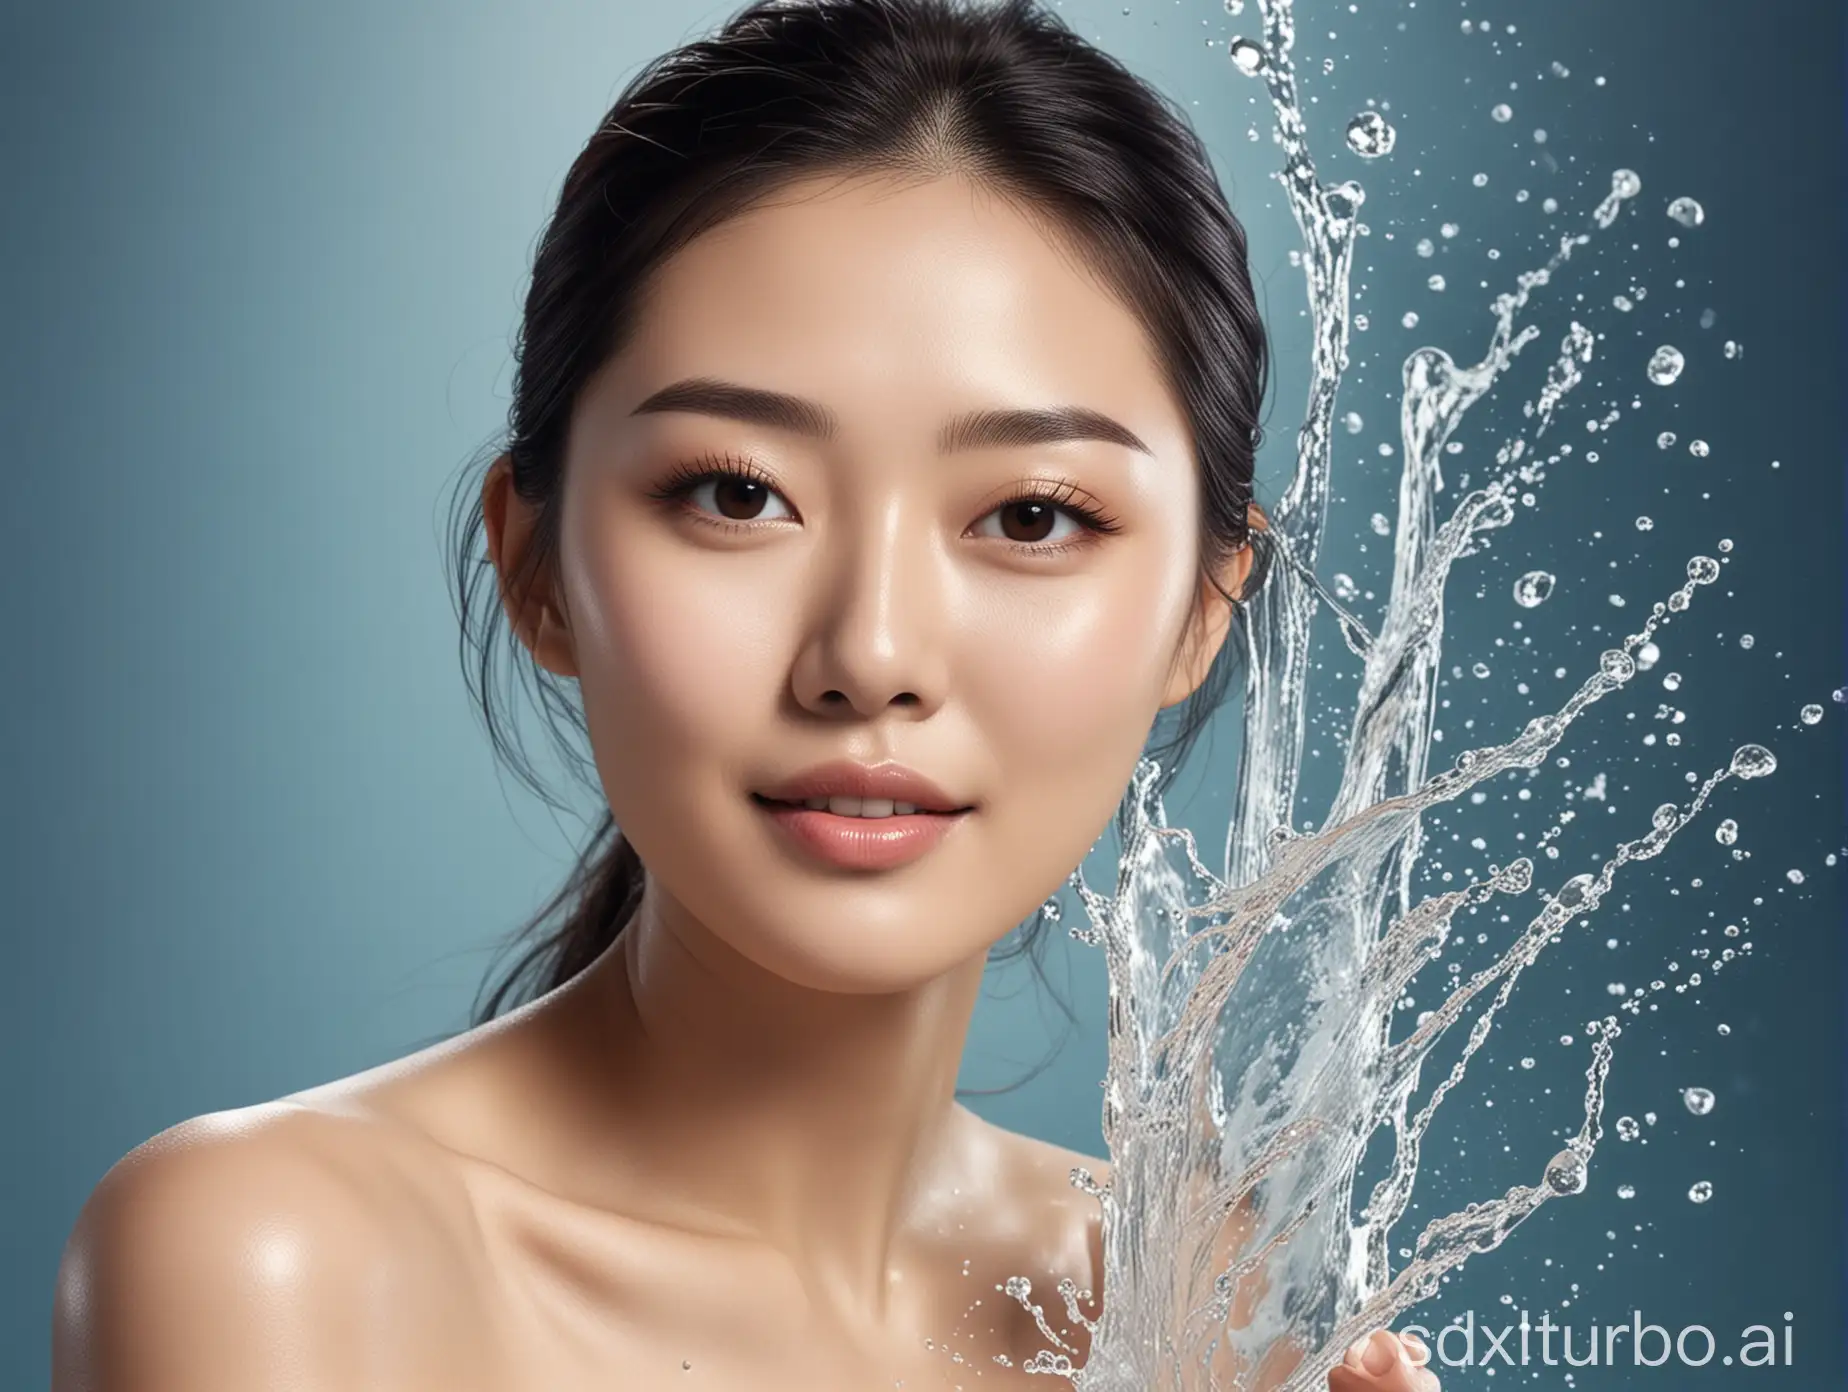 水背景，一个护肤产品加亚洲人人物形象广告